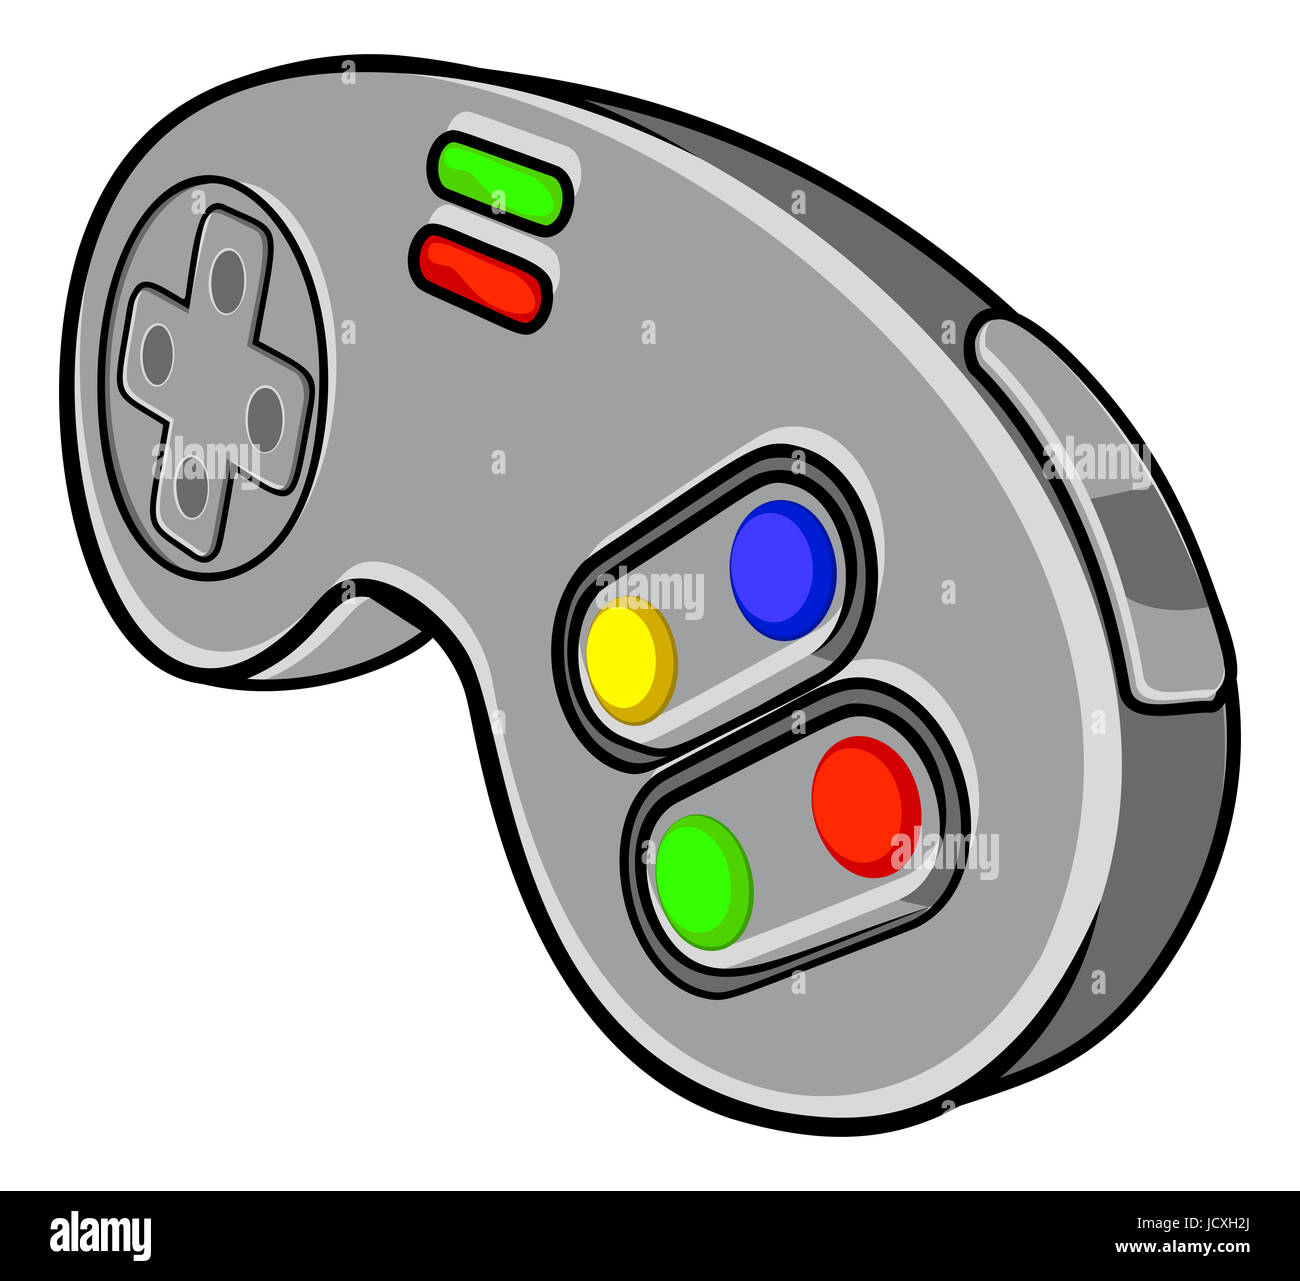 Un controlador de la consola de video juegos icono almohadilla Foto de stock